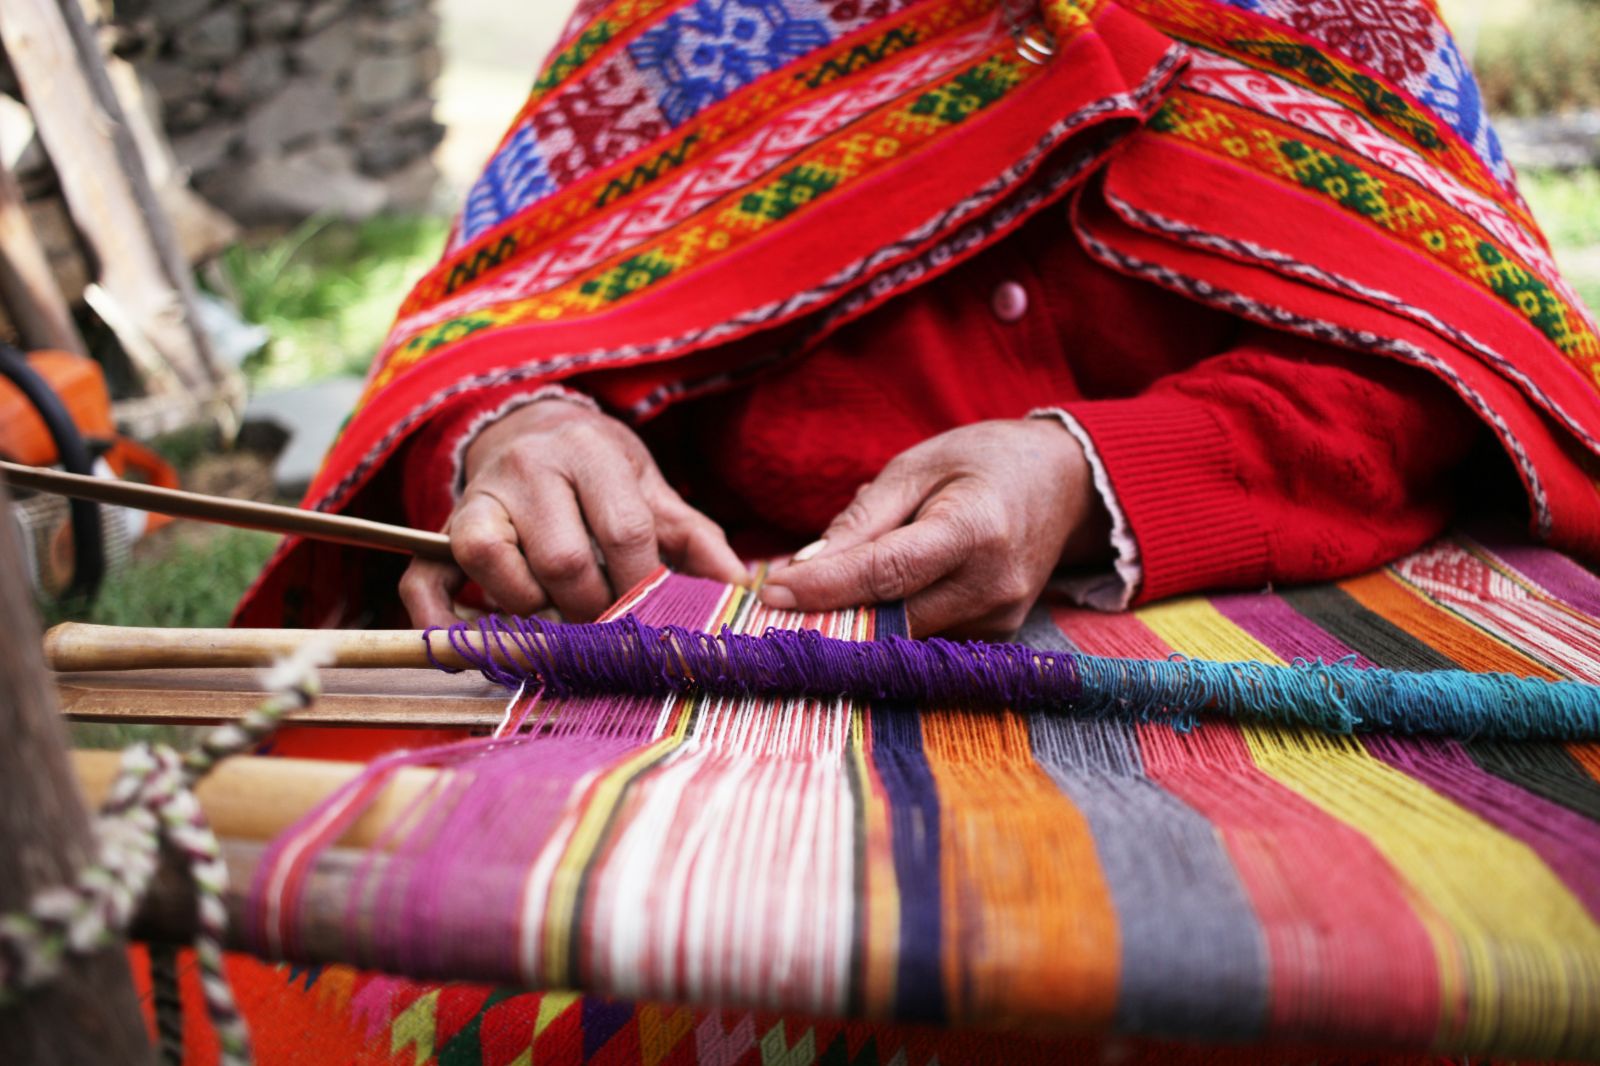 A closeup view of a Peruvian woman weaving